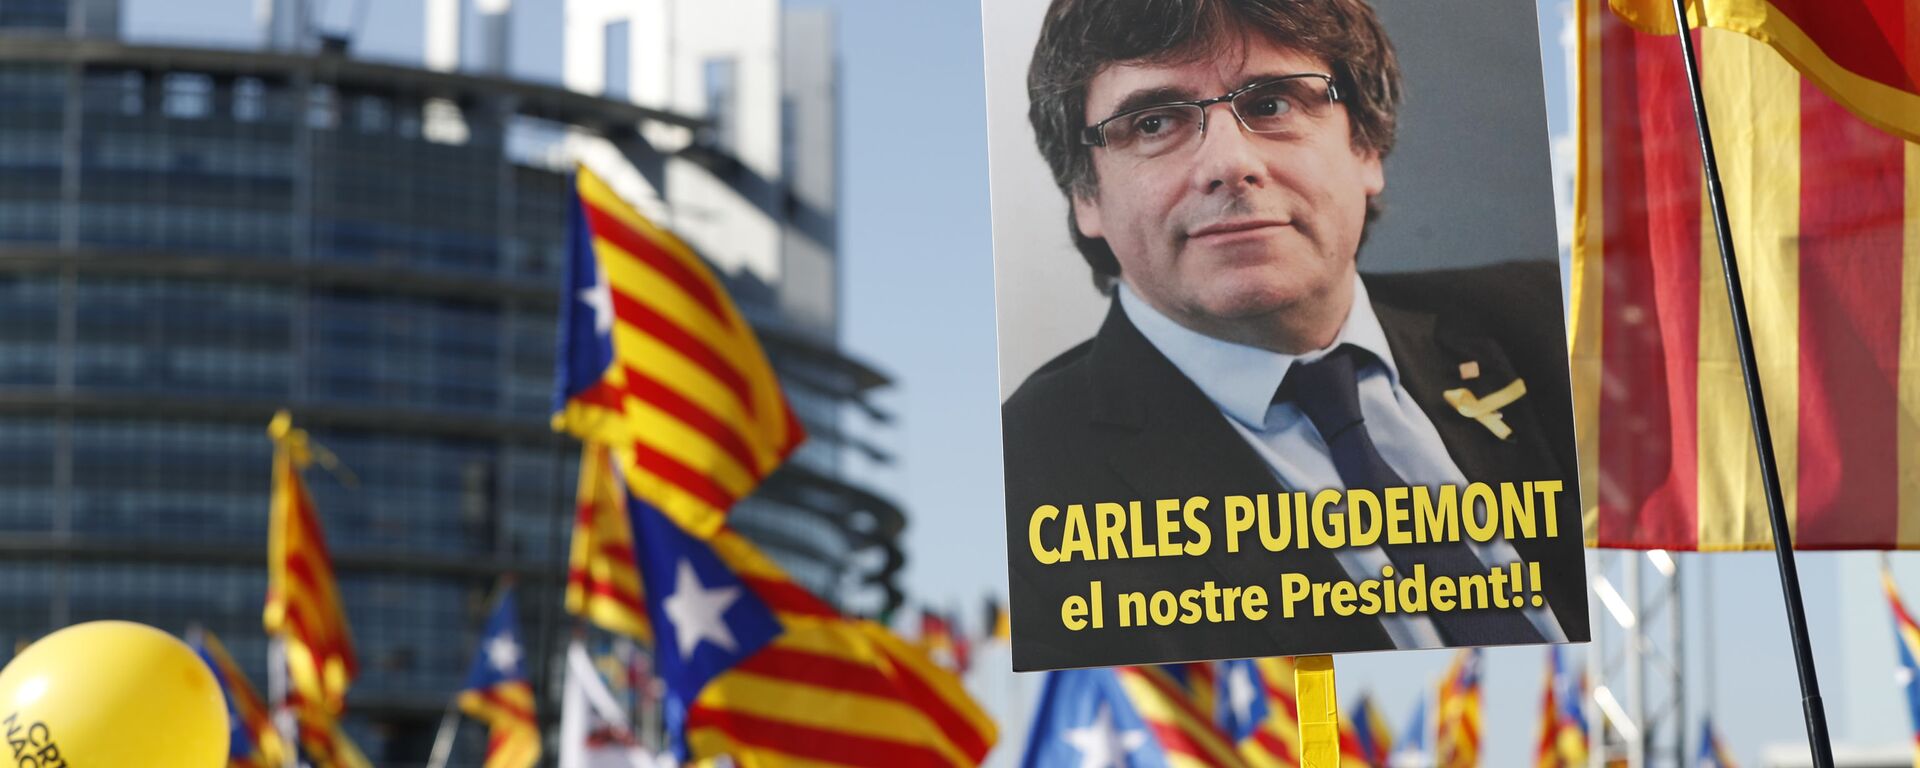 Marcha de protesta al frente del Parlamento Europeo (Estrasburgo, Francia) en contra de la persecución del líder independentista catalán, Carles Puigdemont, el 2 de julio de 2019 - Sputnik Mundo, 1920, 09.03.2021